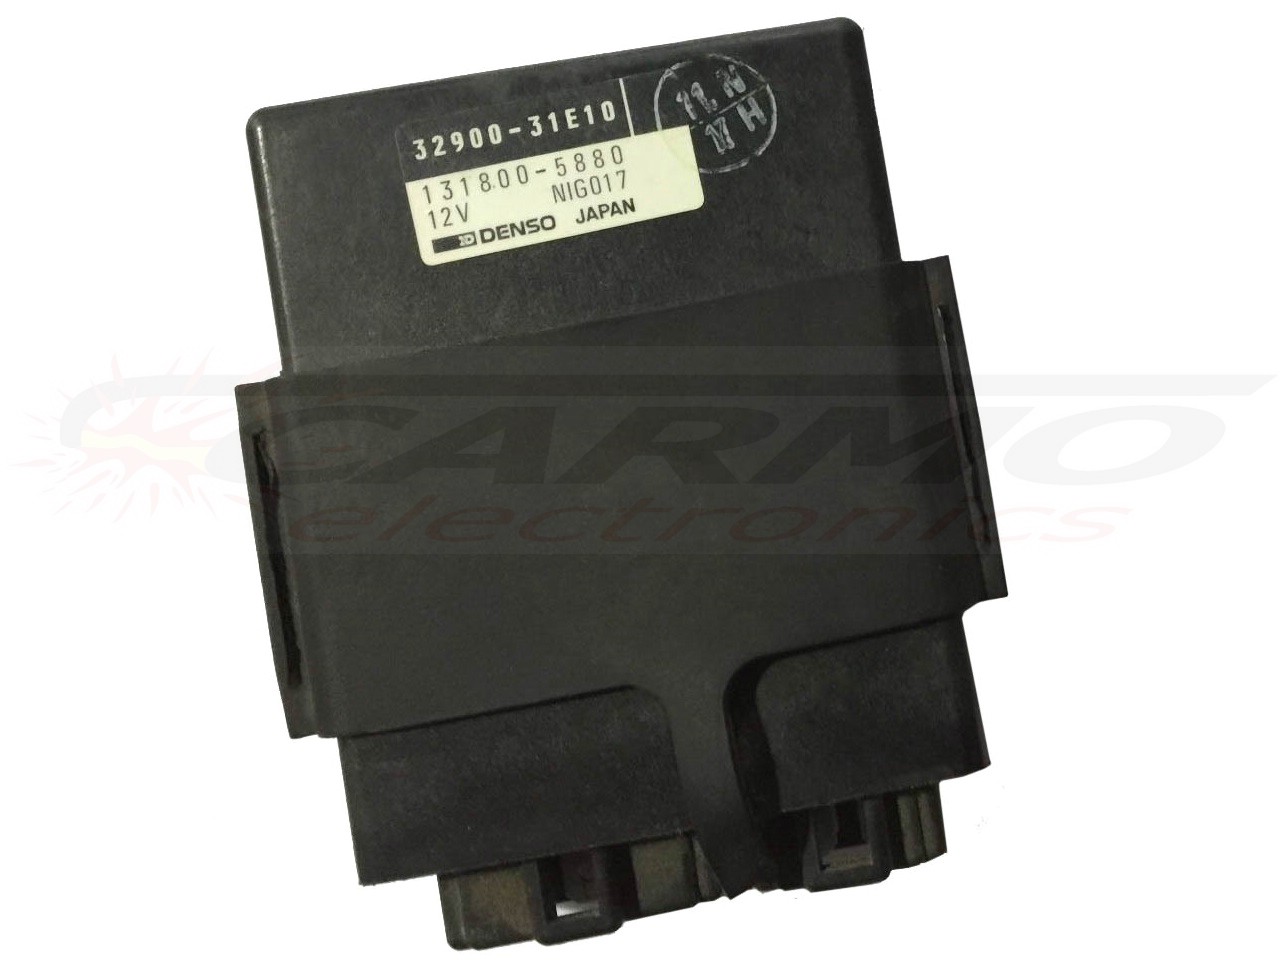 RF900 RF900R igniter ignition module CDI TCI Box (32900-31E00, -31E10, -31E20, -31E30)